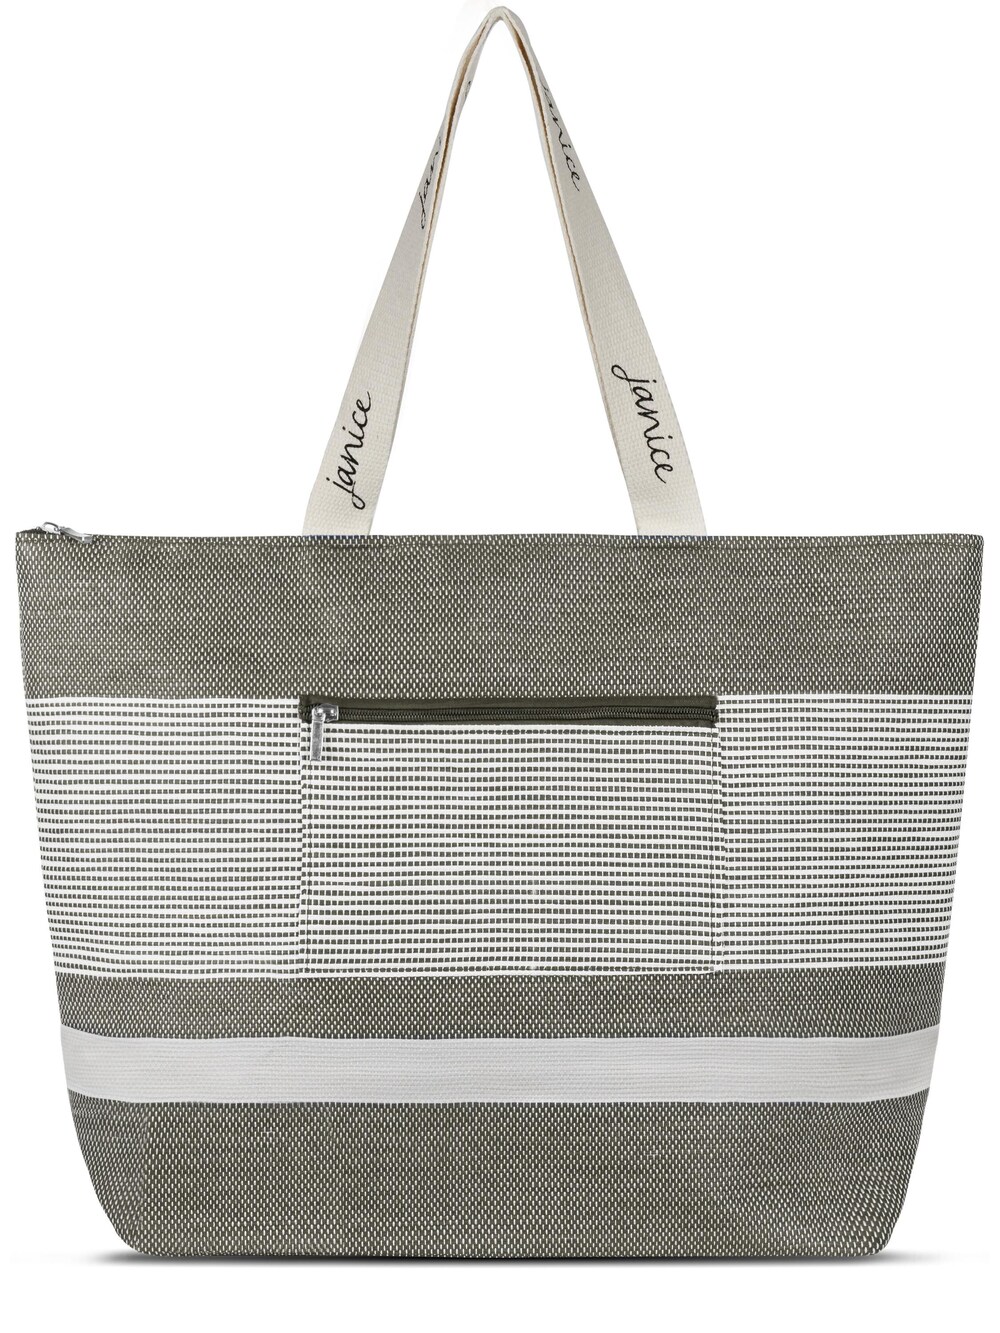 Пляжная сумка Normani Baros, серый/пестрый серый